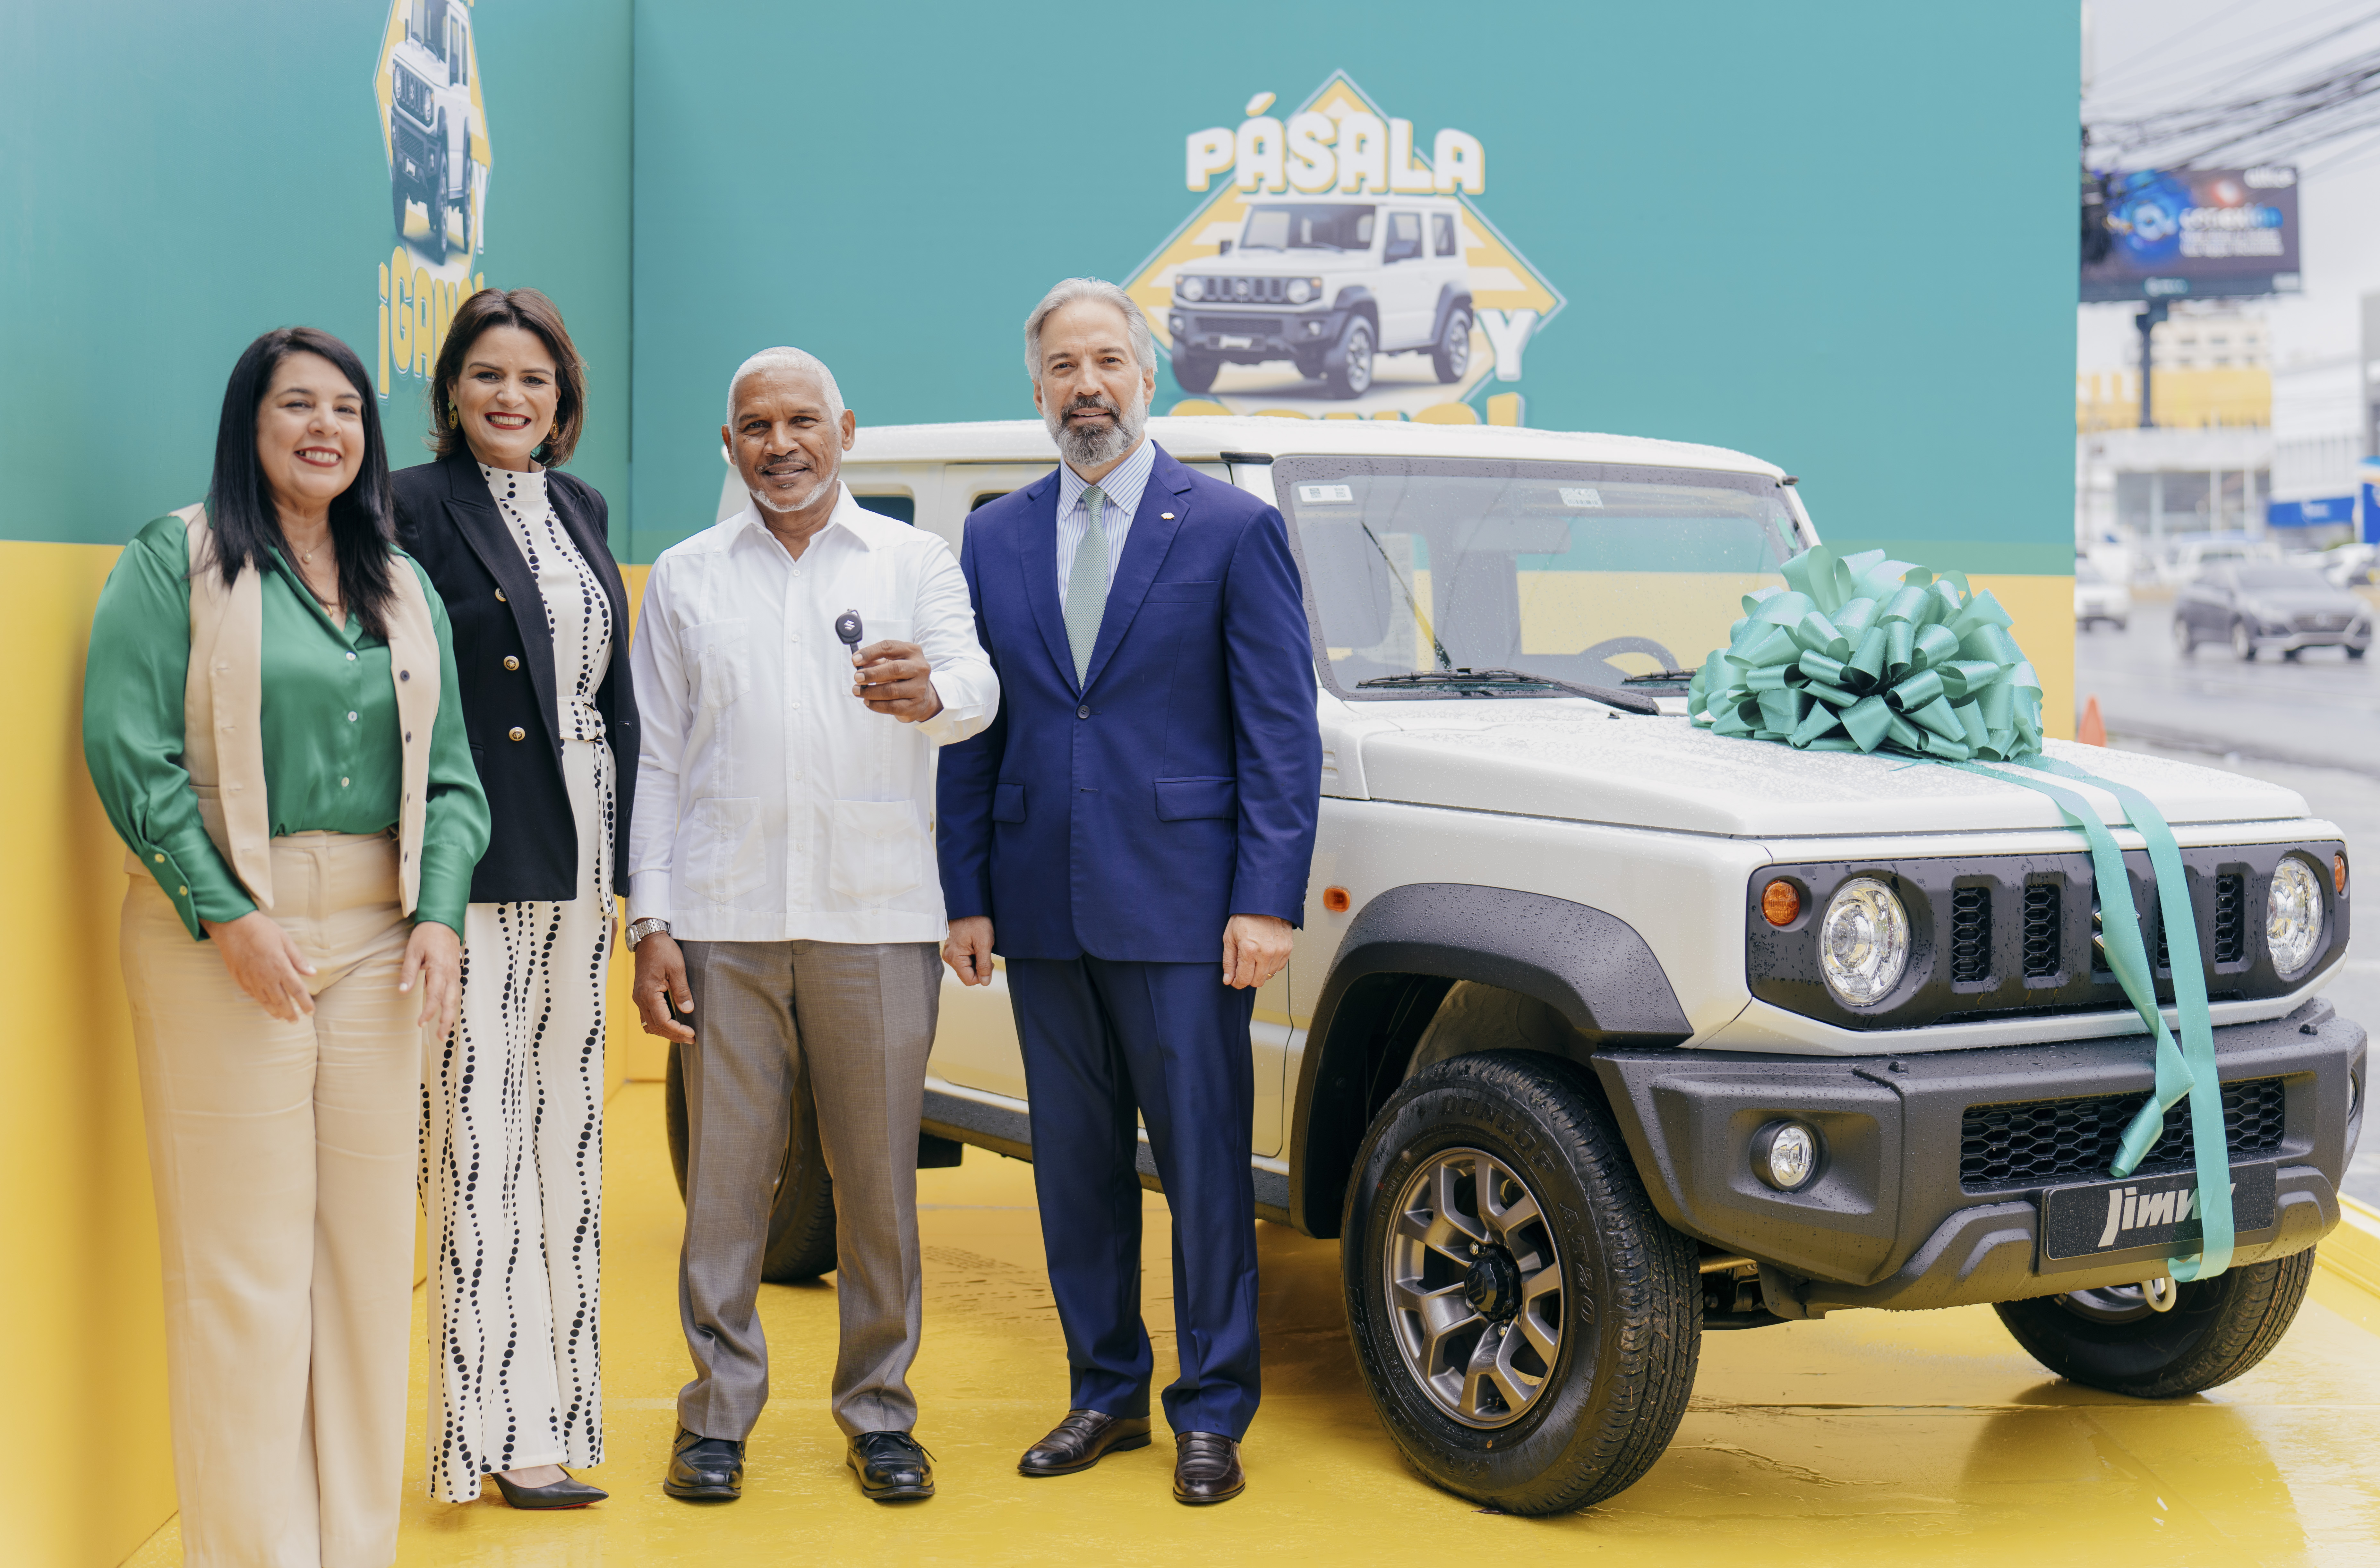 Imagen Banco Caribe entrega vehículo de la promoción “Pásala y Gana”